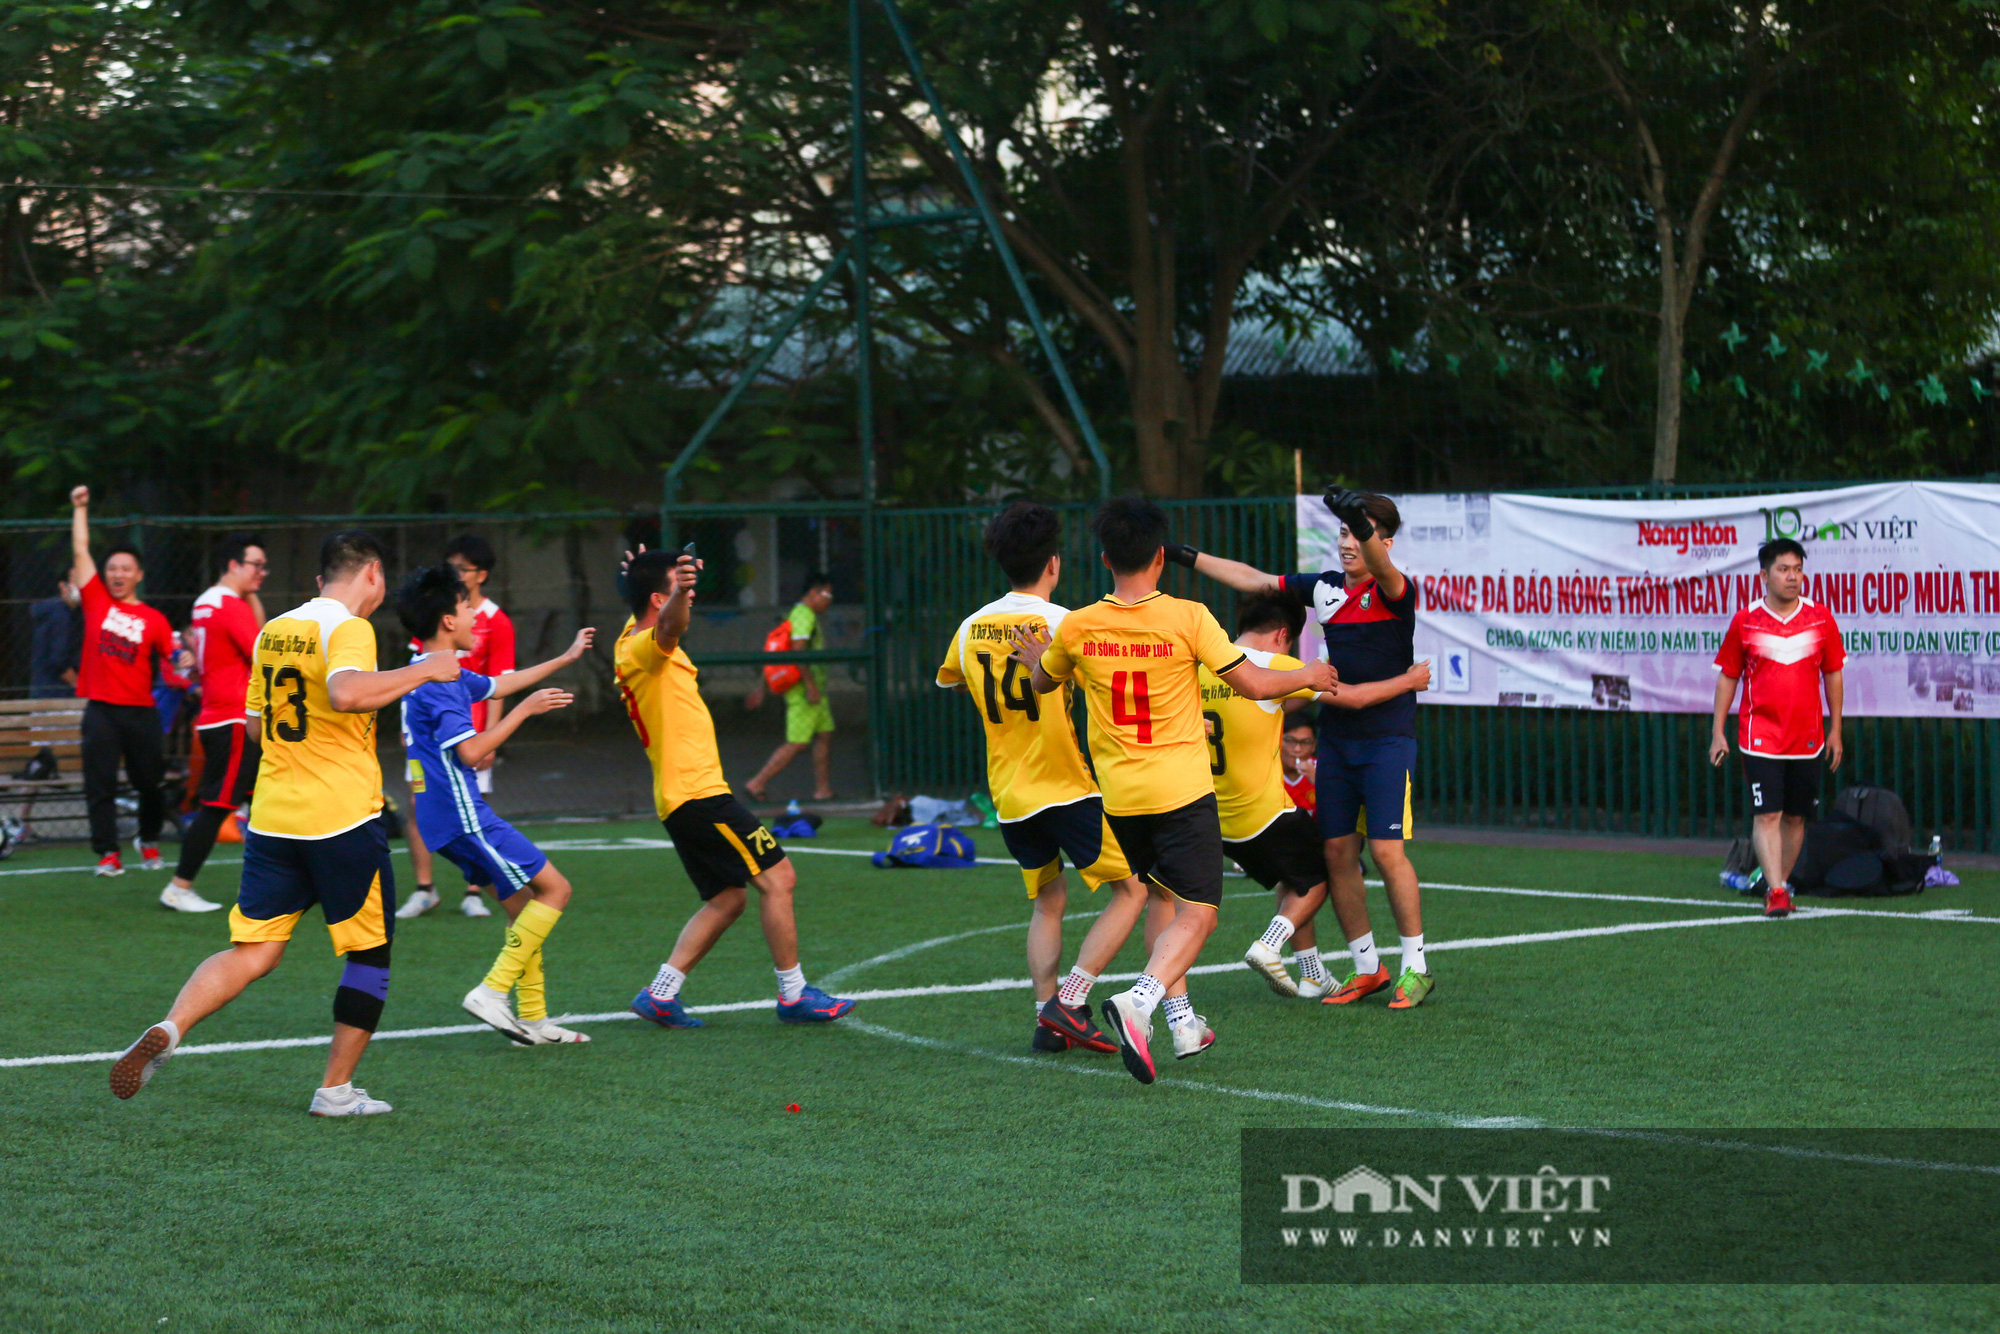 Giành chiến thắng tại bán kết, NTNN/Dân Việt đọ sức cùng ĐSPL tại chung kết - Ảnh 17.